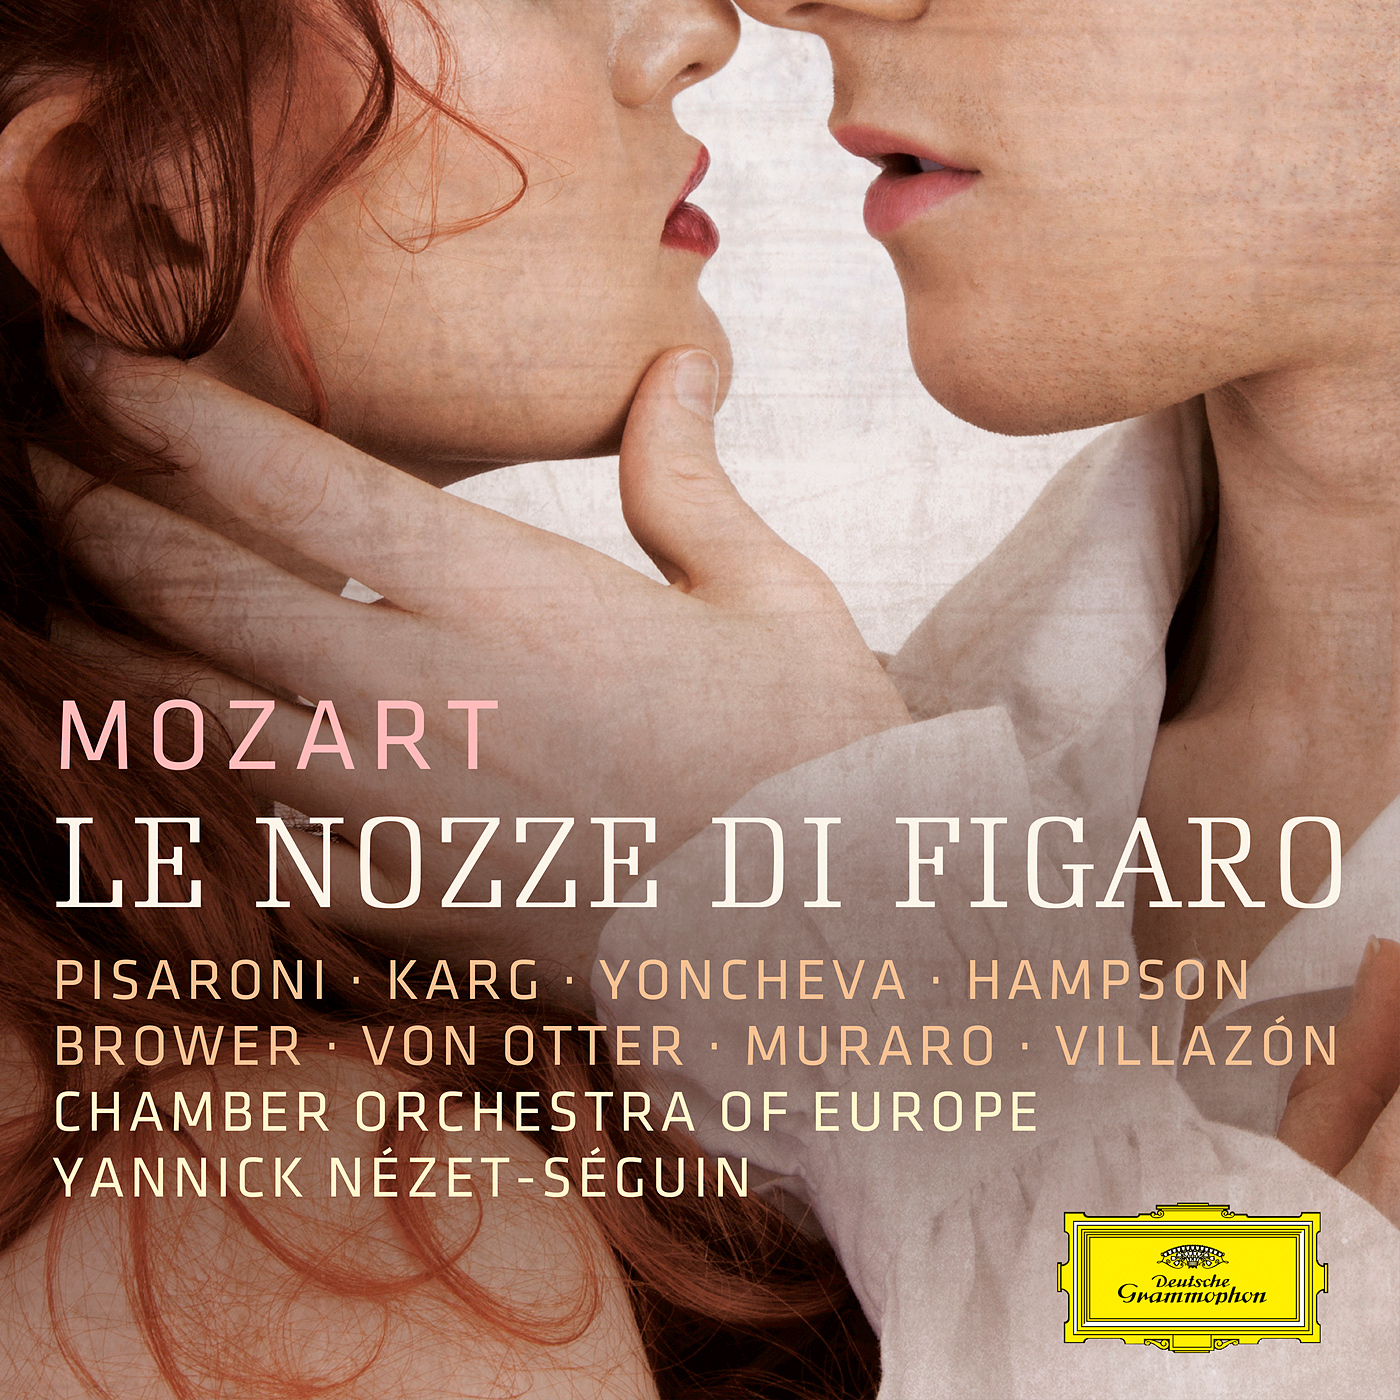 Chamber Orchestra of Europe, Yannick Nezet-Seguin - Mozart: Le nozze di Figaro (2016) [Qobuz FLAC 24bit/96kHz]